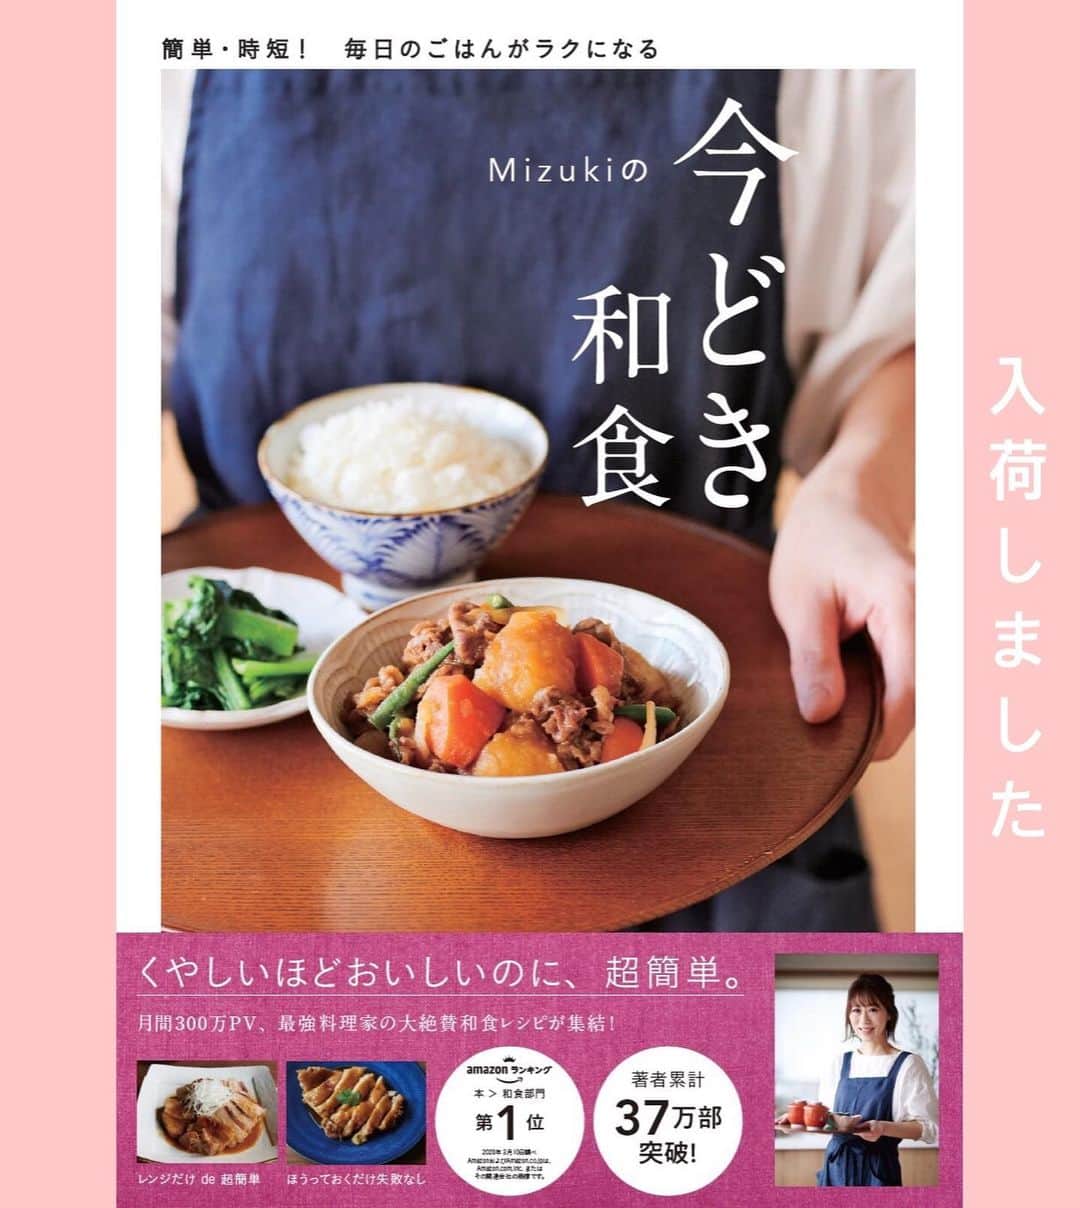 Mizuki【料理ブロガー・簡単レシピ】さんのインスタグラム写真 - (Mizuki【料理ブロガー・簡単レシピ】Instagram)「・﻿ 【レシピ】ーーーーーーーーーー﻿ ♡焼きそば麺de焼きラーメン♡﻿ ーーーーーーーーーーーーーーー﻿ ﻿ ﻿  おはようございます(*^^*)﻿ ﻿ 今日ご紹介させていただくのは﻿ 焼きそば用の麺で作る焼きラーメン♩﻿ フライパンひとつでできて﻿ おうちで気軽に楽しめますよ〜♡﻿ 調味料に牛乳を加えることで﻿ なんと、豚骨風味になります(*´艸`)﻿ ﻿ 本場のとは少し違うけど﻿ これはこれで美味しいので﻿ よかったらお試し下さいね(*^^*)﻿ ﻿ ﻿ ﻿ ーーーーーーーーーーーーーーーーーーーー﻿ 【2人分】﻿ 焼きそば麺...2玉﻿ 豚バラ薄切り肉...100g﻿ キャベツ...1/5個(200g)﻿ 長ねぎ...1/2本﻿ ごま油...大1﻿ ●水・牛乳...各100ml﻿ ●醤油...大1﻿ ●鶏がらスープ...小2〜大1﻿ ●塩こしょう...少々﻿ (あれば)紅生姜・万能ねぎ...各適量﻿ ﻿ 1.豚肉は3cm長さに切る。キャベツはザク切りにする。長ねぎは斜め薄切りにする。﻿ 2.フライパンにごま油を入れて中火で熱し、1を炒める。豚肉に火が通ったら麺と●を加え、麺をほぐしながら水分が少し残る程度まで炒め合わせる。﻿ 3.器に盛り、小口切りにしたねぎと紅生姜をトッピングする。﻿ ーーーーーーーーーーーーーーーーーーーー﻿ ﻿ ﻿ ﻿ 《ポイント》﻿ ♦︎鶏がらスープの量に幅を持たせています☆はじめは少なめに加え、味が薄いようなら仕上げに足して下さい♩少し濃いめくらいが美味しいです☆﻿ ﻿ ﻿ ﻿ ﻿ ﻿ ﻿ ﻿ 🔻入荷しました🔻﻿ ストーリーにリンク貼っています🙇‍♀️﻿ ＿＿＿＿＿＿＿＿＿＿＿＿＿＿＿＿＿＿＿﻿ 📕\ \ 新刊発売中 / /📕﻿ 簡単・時短！ 毎日のごはんがラクになる﻿ ✨🦋 【 #Mizukiの今どき和食 】🦋✨﻿ ＿＿＿＿＿＿＿＿＿＿＿＿＿＿＿＿＿＿＿﻿ ﻿ なるべく少ない材料で﻿ 手間も時間も省きながら﻿ 簡単にできるおいしい和食レシピ♩﻿ 簡単に失敗なくマスターできる一冊で﻿ もっと気軽に、カジュアルに﻿ 和食を楽しんで下さいね(*^^*)﻿ ﻿ ﻿ ーーー ⭐️PART.1 メインおかず ⭐️ーーー﻿ 素材別にレシピをご紹介しています♩﻿ 和食の定番から新定番まで﻿ どれも押さえておきたいメニューばかり。﻿ 肉じゃがはフライパンで！焼き豚はレンジで！﻿ ぶり大根は切り身を使って手軽に作ります♩﻿ ﻿ ーーー ☘️PART.2 サブおかず ☘️ーーー﻿ 年中手に入るお手頃野菜と﻿ 乾物や大豆、こんにゃくなどを使った﻿ 副菜レシピをたっぷり掲載！！﻿ 普段SNSではメインおかずばかりなので﻿ 本では副菜にも力を入れています(*^^*)﻿ ﻿ ーーー 🌸PART.3 ごはんと汁物 🌸ーーー﻿ ささっと作れる丼と麺、﻿ みんなで食べたいいなり寿司や﻿ 手巻きごはんもご紹介！﻿ 複数の炊き込みごはんと﻿ 味噌汁&和風スープも盛りだくさん！﻿ ﻿ ﻿ 各レシピのポイントは﻿ 【写真付きで丁寧に解説】﻿ 副菜レシピもたっぷりなので﻿ 【メインページに副菜メモもつけました】﻿ ＊このメインにはこの副菜が合いますよ〜﻿ という献立の提案です(*^^*)﻿ 【その他コラムも充実】﻿ 全127品中ほぼ全て﻿ 【本だけのレシピです！】﻿ ﻿ ＿＿＿＿＿＿＿＿＿＿＿＿＿＿＿＿＿＿＿﻿ ﻿ ﻿ ﻿ ﻿ ﻿ ﻿ ＿＿＿＿＿＿＿＿＿＿＿＿＿＿＿＿＿﻿ 🎀発売中🎀﻿ 【#ホットケーキミックスのお菓子 】﻿ ﻿ 一冊まるっとホケミスイーツ♩﻿ 普段のおやつから﻿ 特別な日にも使えるレシピを﻿ この一冊に詰め込みました(*^^*)﻿ ホットケーキミックスを使えば﻿ 簡単に本格的なお菓子が作れますよ♡﻿ ＿＿＿＿＿＿＿＿＿＿＿＿＿＿＿＿＿﻿ ﻿ ⭐️ストーリー、ハイライト、プロフ画面に﻿ 本のURLを貼らせていただいております♩﻿ →(@mizuki_31cafe )﻿ ﻿ ﻿ ﻿ ﻿ ﻿ ﻿ #焼きラーメン#やきそば#牛乳#ラーメン#キャベツ#豚肉#うちで過ごそう#おうち時間#Mizuki#簡単レシピ#時短レシピ#節約レシピ#料理#レシピ#フーディーテーブル#マカロニメイト#おうちごはん#おうちカフェ#デリスタグラマー#料理好きな人と繋がりたい#おうちごはんlover#foodpic#follow#cooking#recipe#lin_stagrammer#stayhome#焼きラーメンm」5月14日 8時33分 - mizuki_31cafe